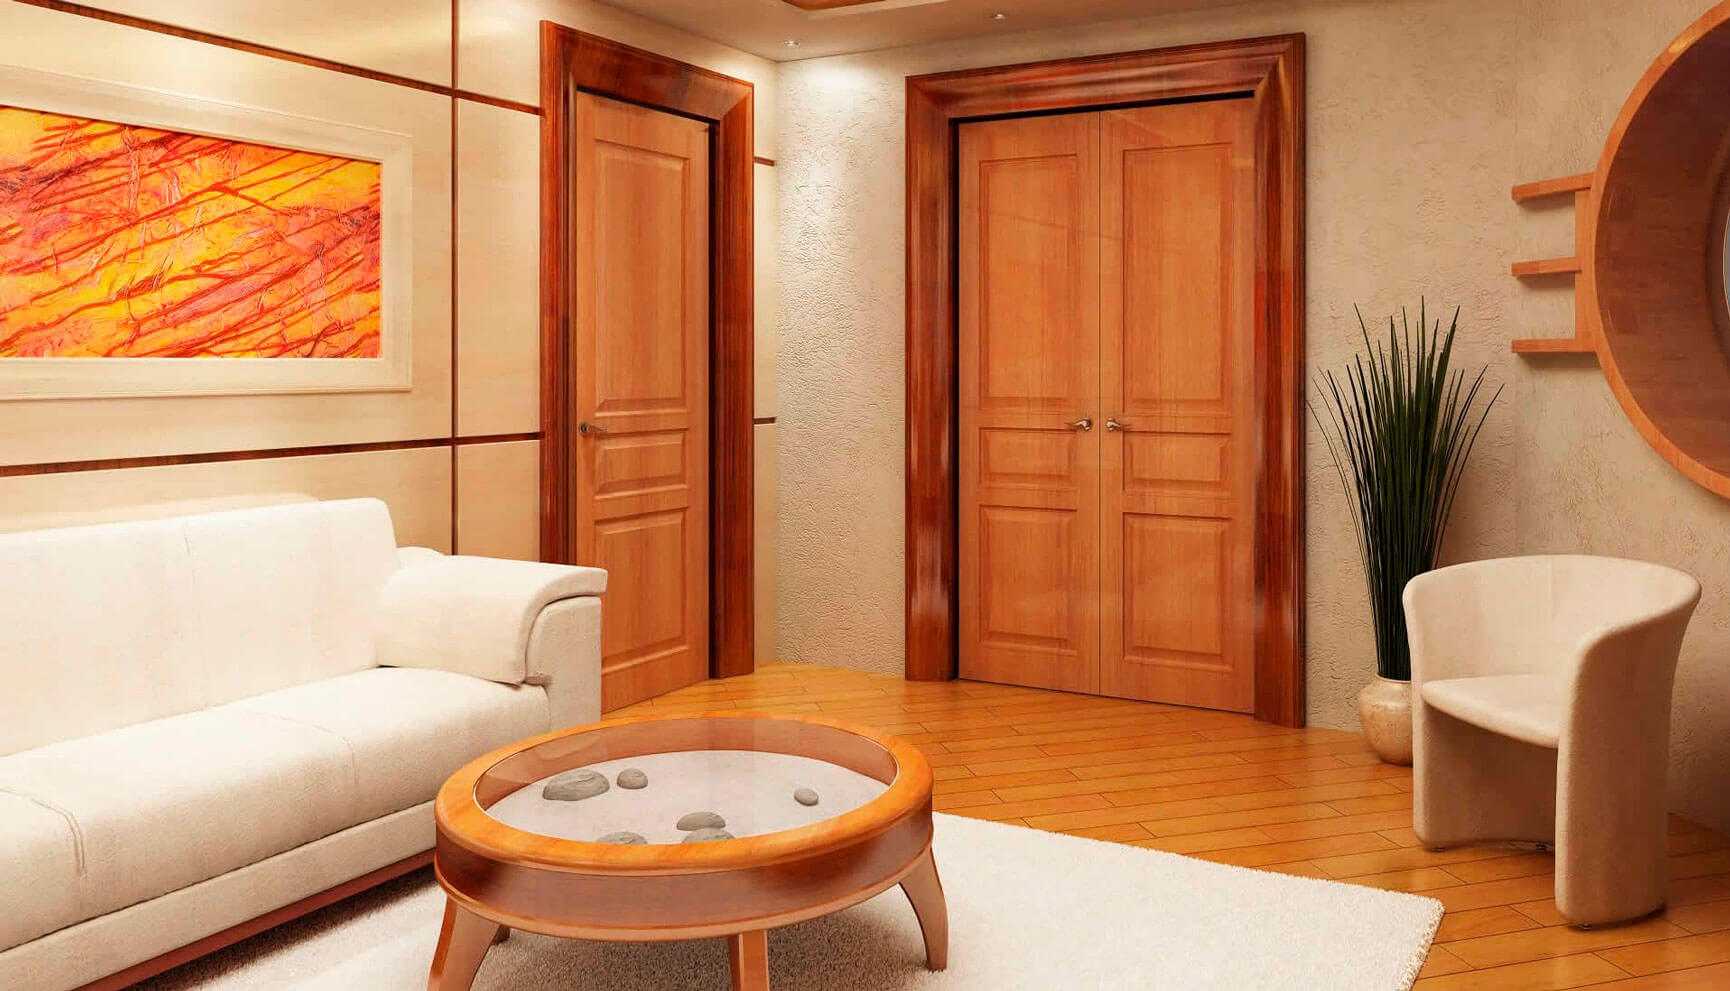 Двойные двери в зал (38 фото): выбираем межкомнатные двухдверные витрины в гостиную комнату и другие двустворчатые варианты. их стандартные размеры